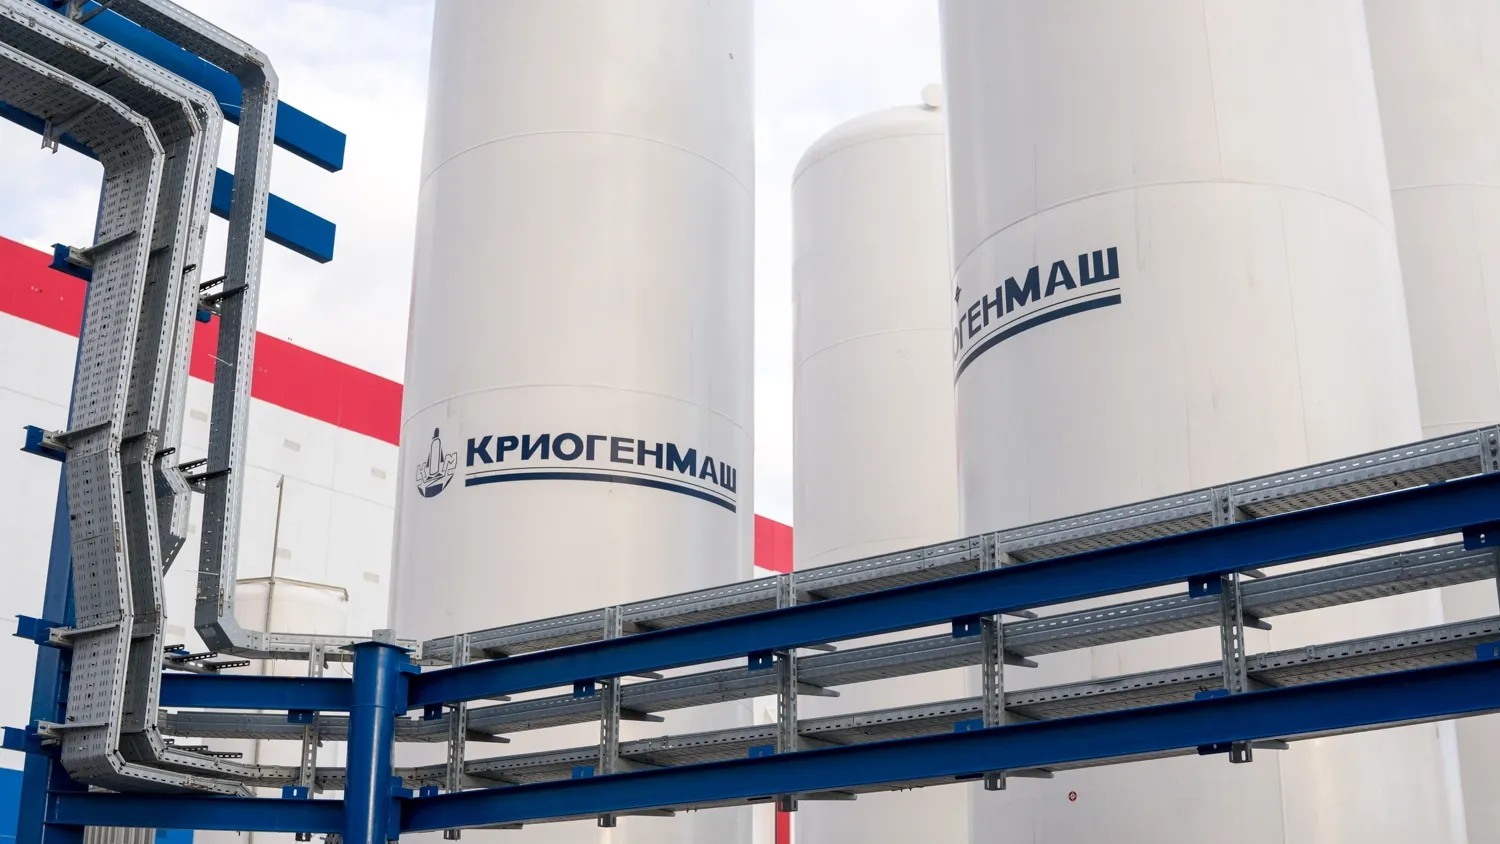 Система хранения газов, произведенная в Подмосковье на предприятии «Криогенмаш». Фото: Юлия Чудинова / "Ямал-Медиа"